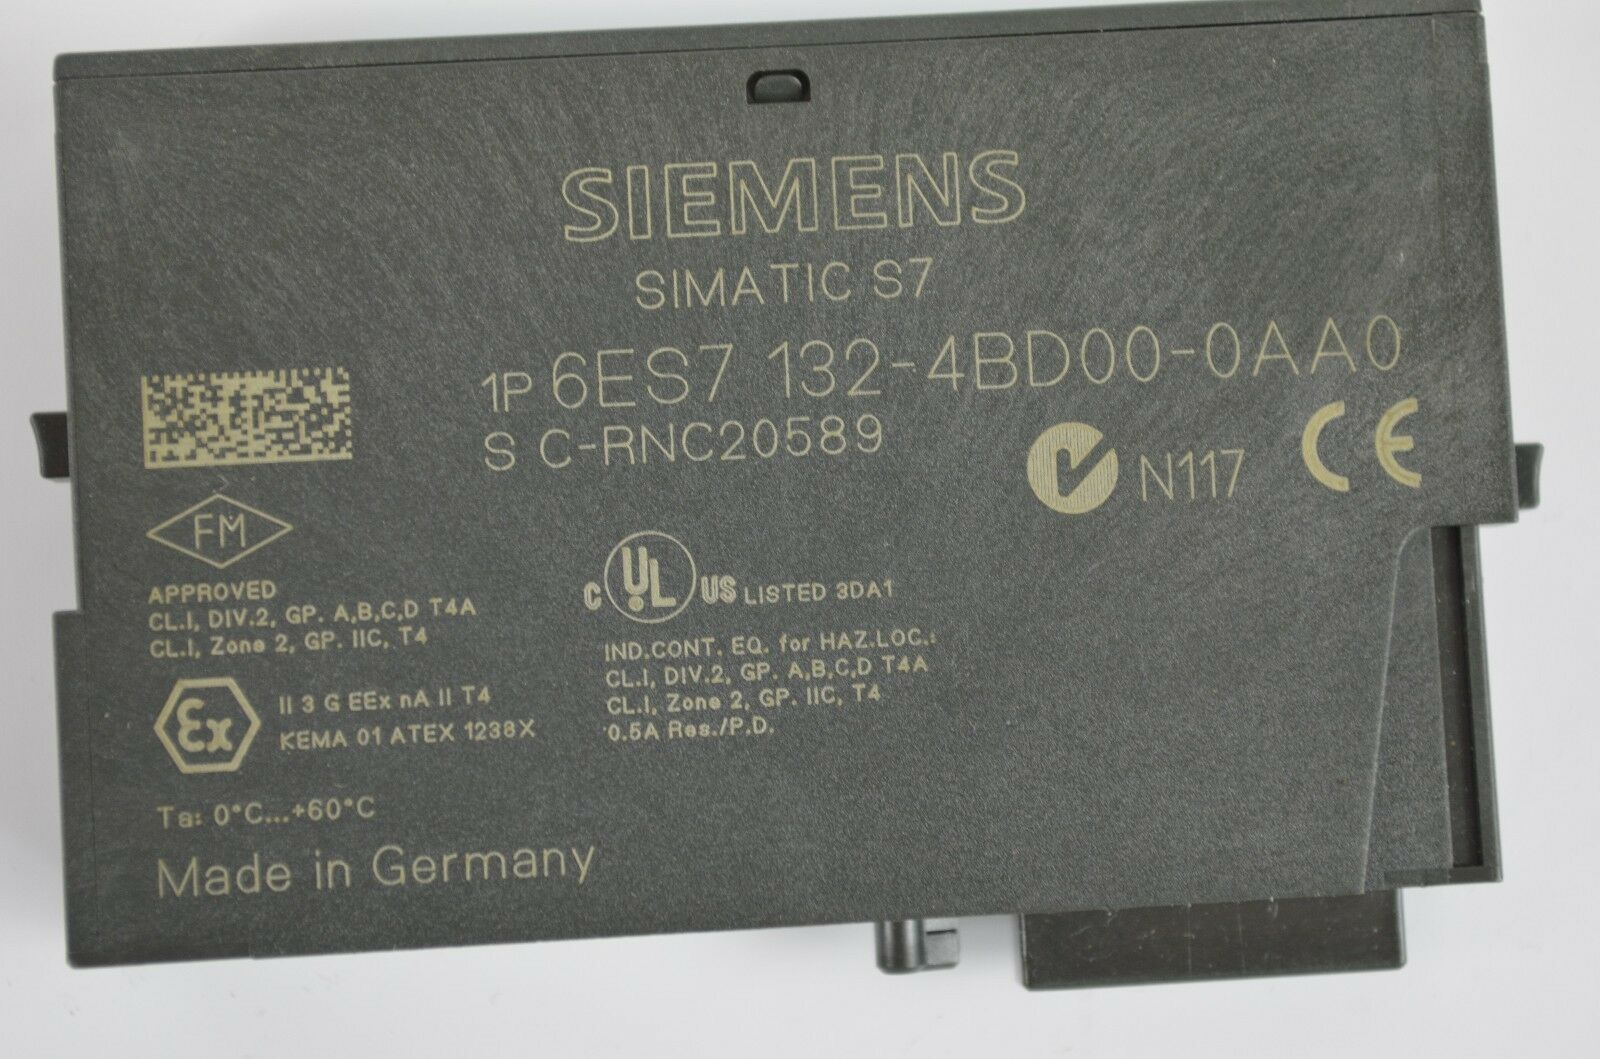 Siemens simatic S7 6ES7 132-4BD00-0AA0 ( 6ES7132-4BD00-0AA0 )